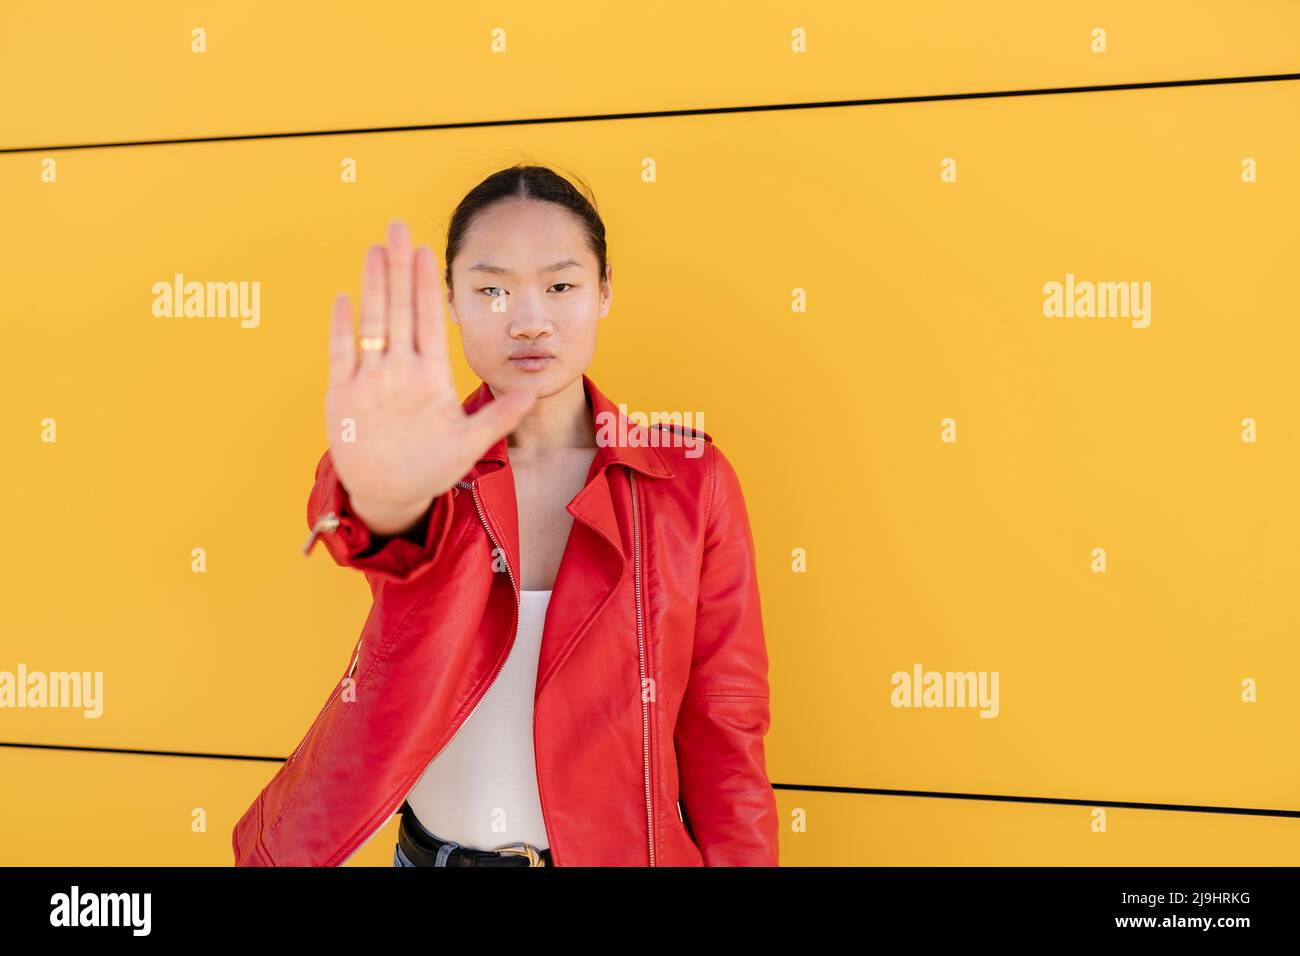 Junge Frau, die mit der Hand vor der gelben Wand ein Stoppschild gestikuliert Stockfoto